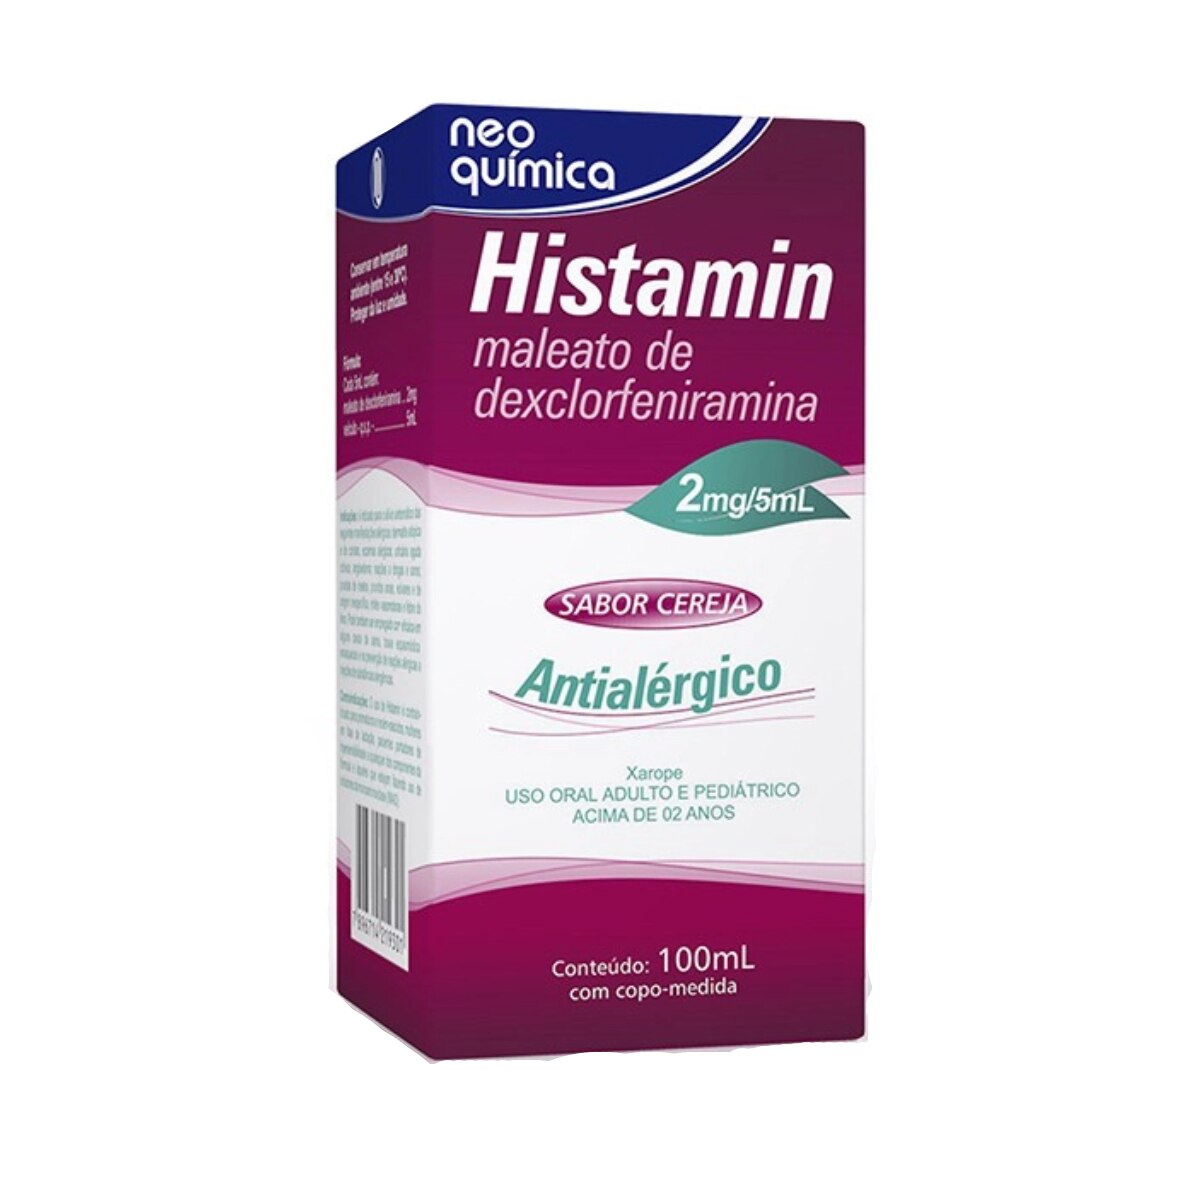 Histamin Xarope 2mg/5ml 100ml